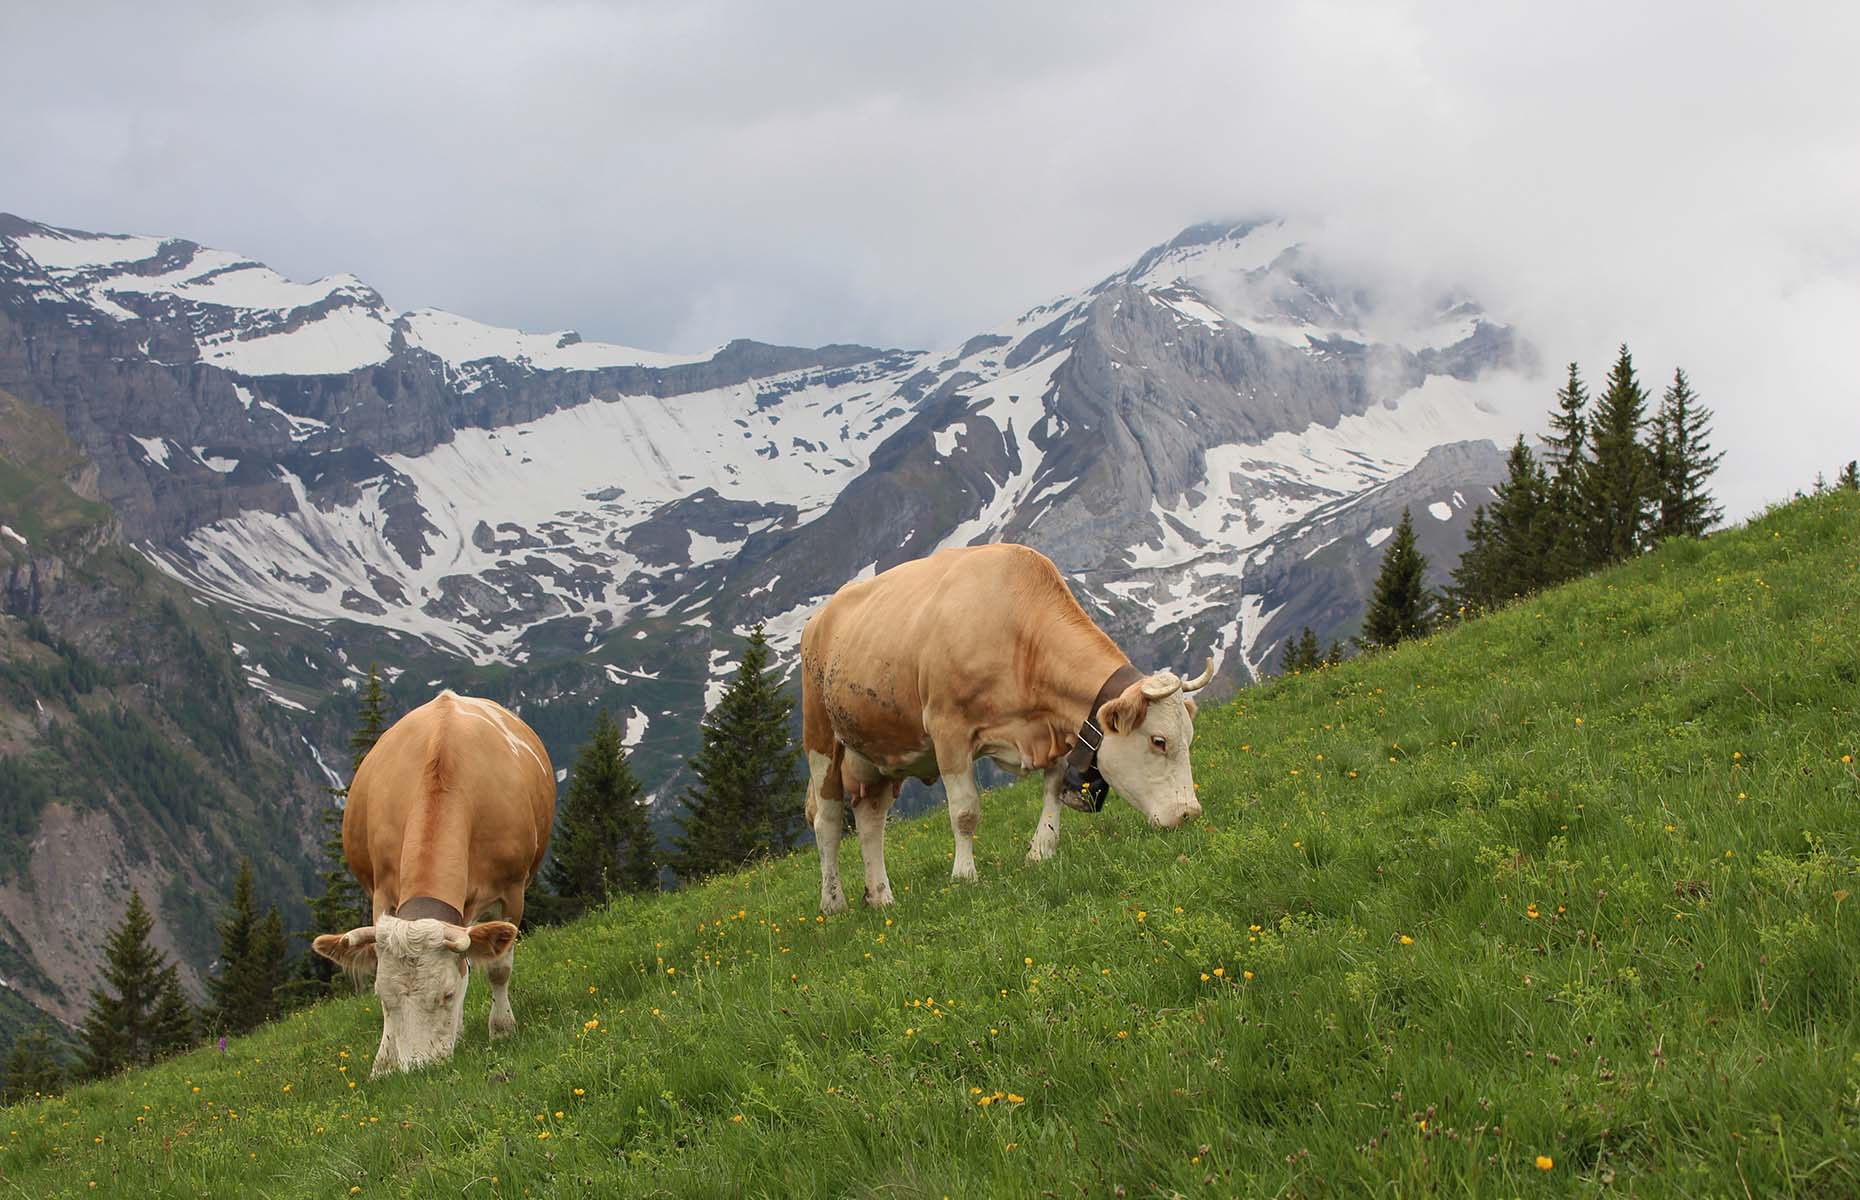 Cows in Gstaad (Image: Ursula Perreten/Shutterstock)